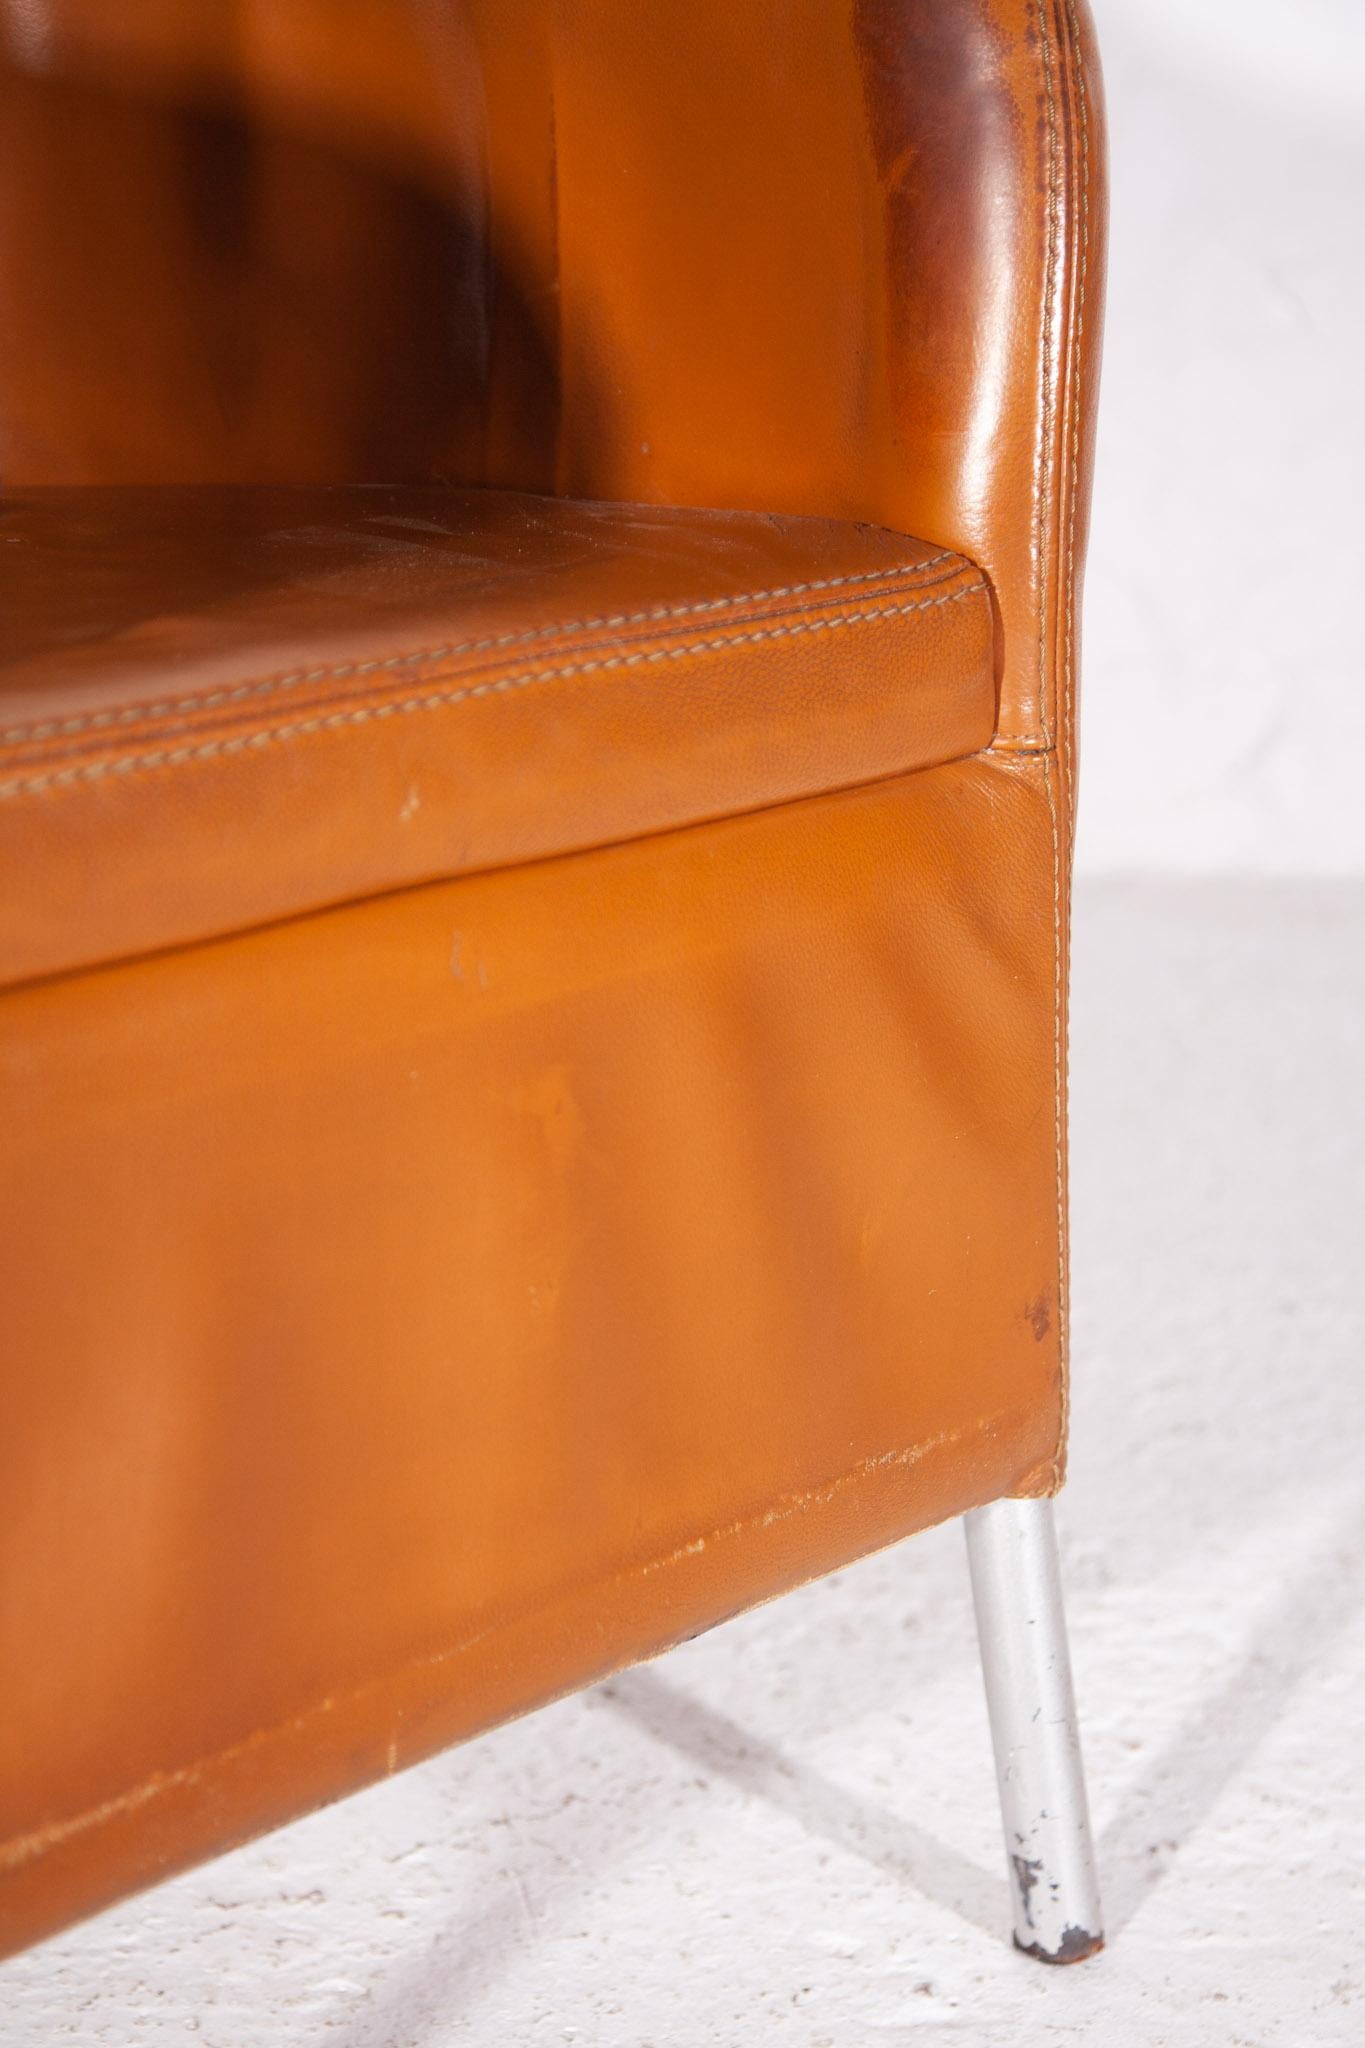 Fin du 20e siècle Durlet, fabriqué en Belgique, fauteuils en cuir camel en vente